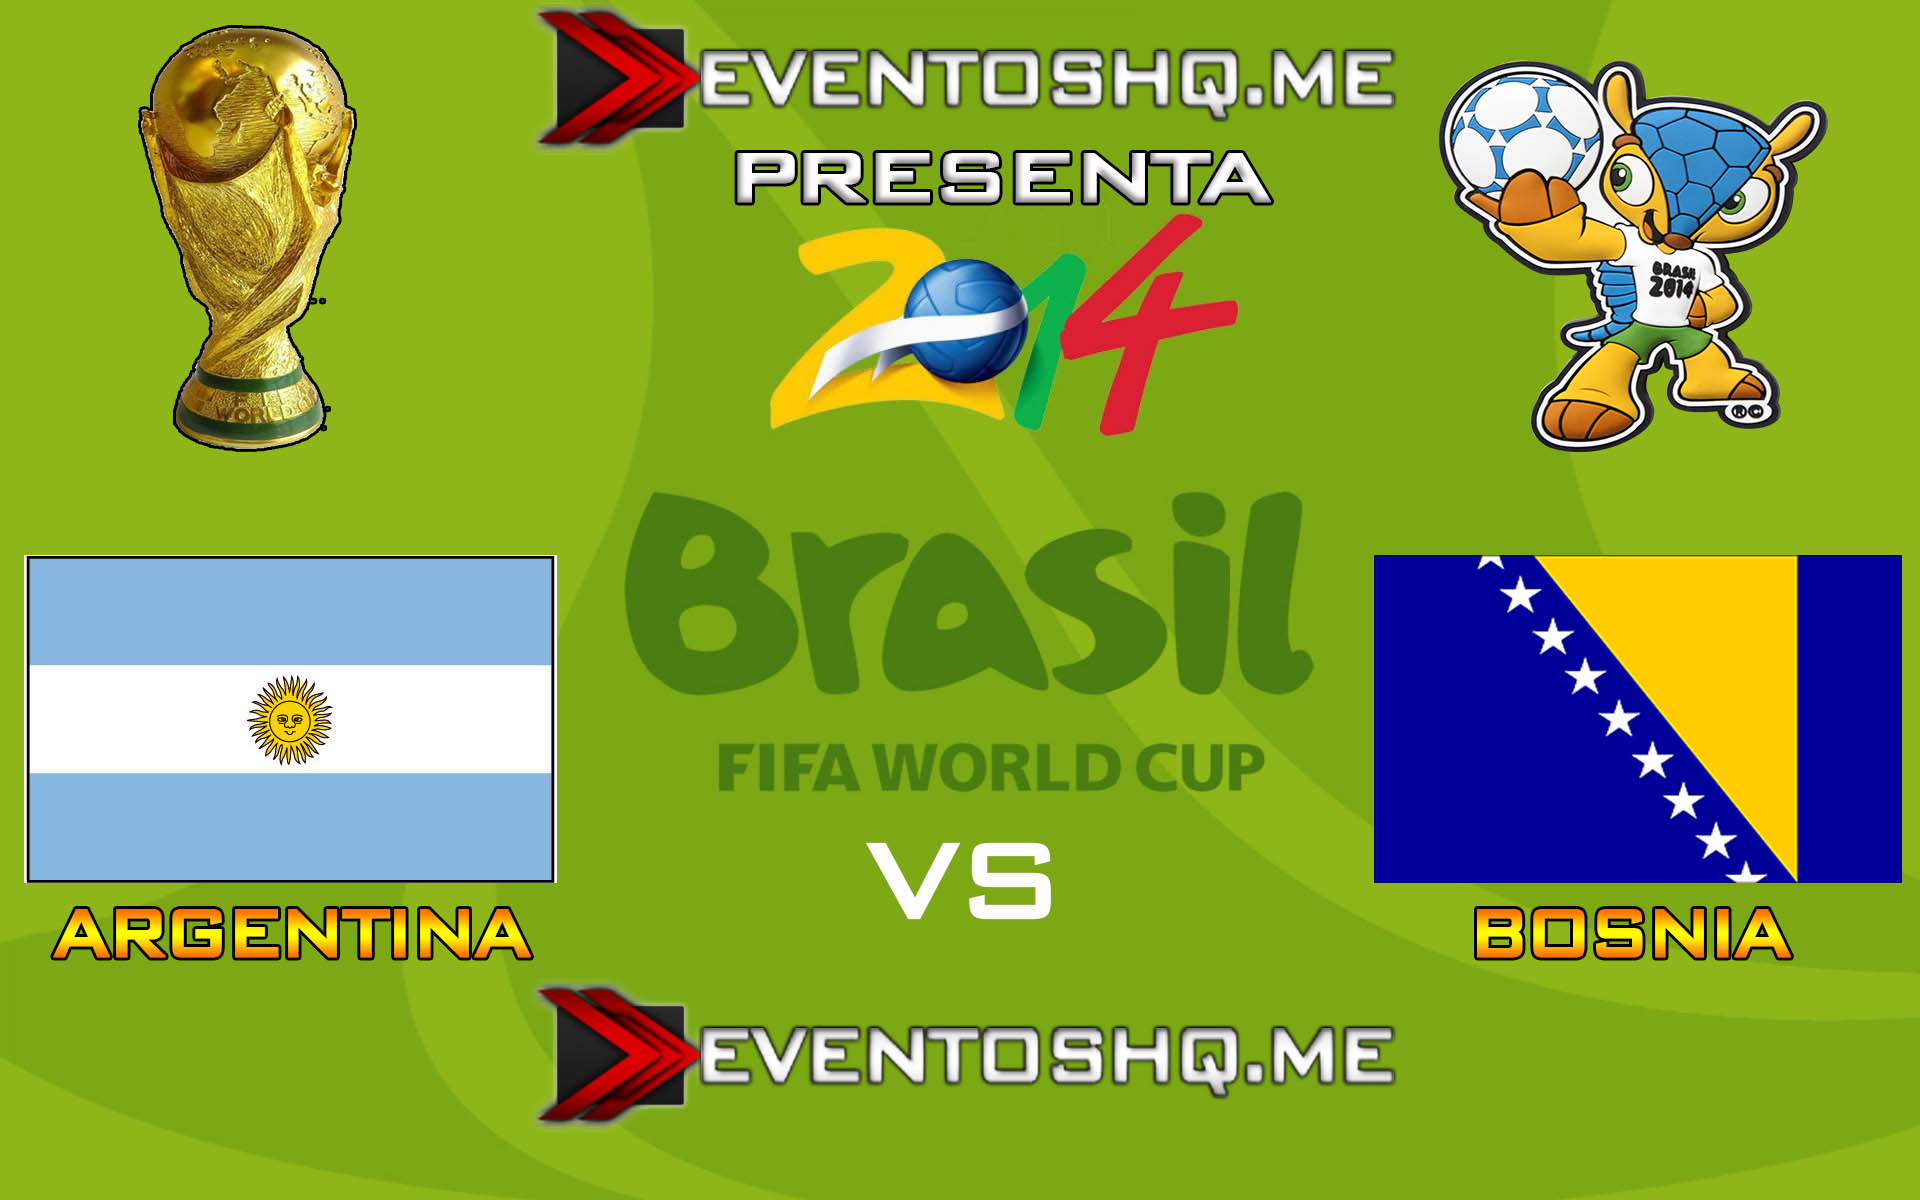 Ver en Vivo Argentina vs Bosnia y Herzegovina Mundial Brasil 2014 www.eventoshq.me